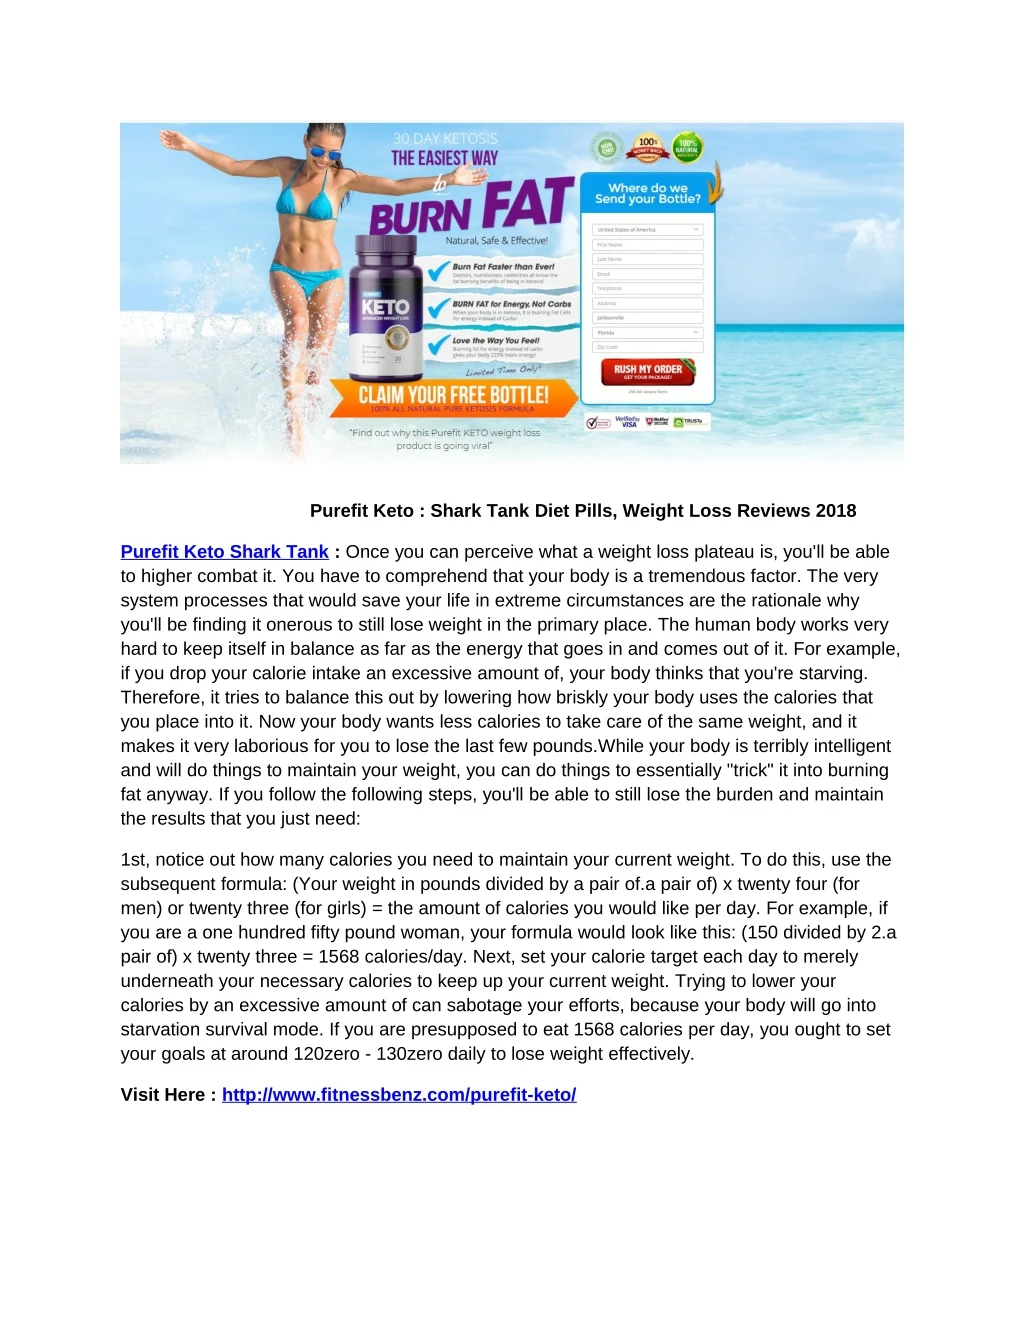 purefit keto shark tank diet pills weight loss